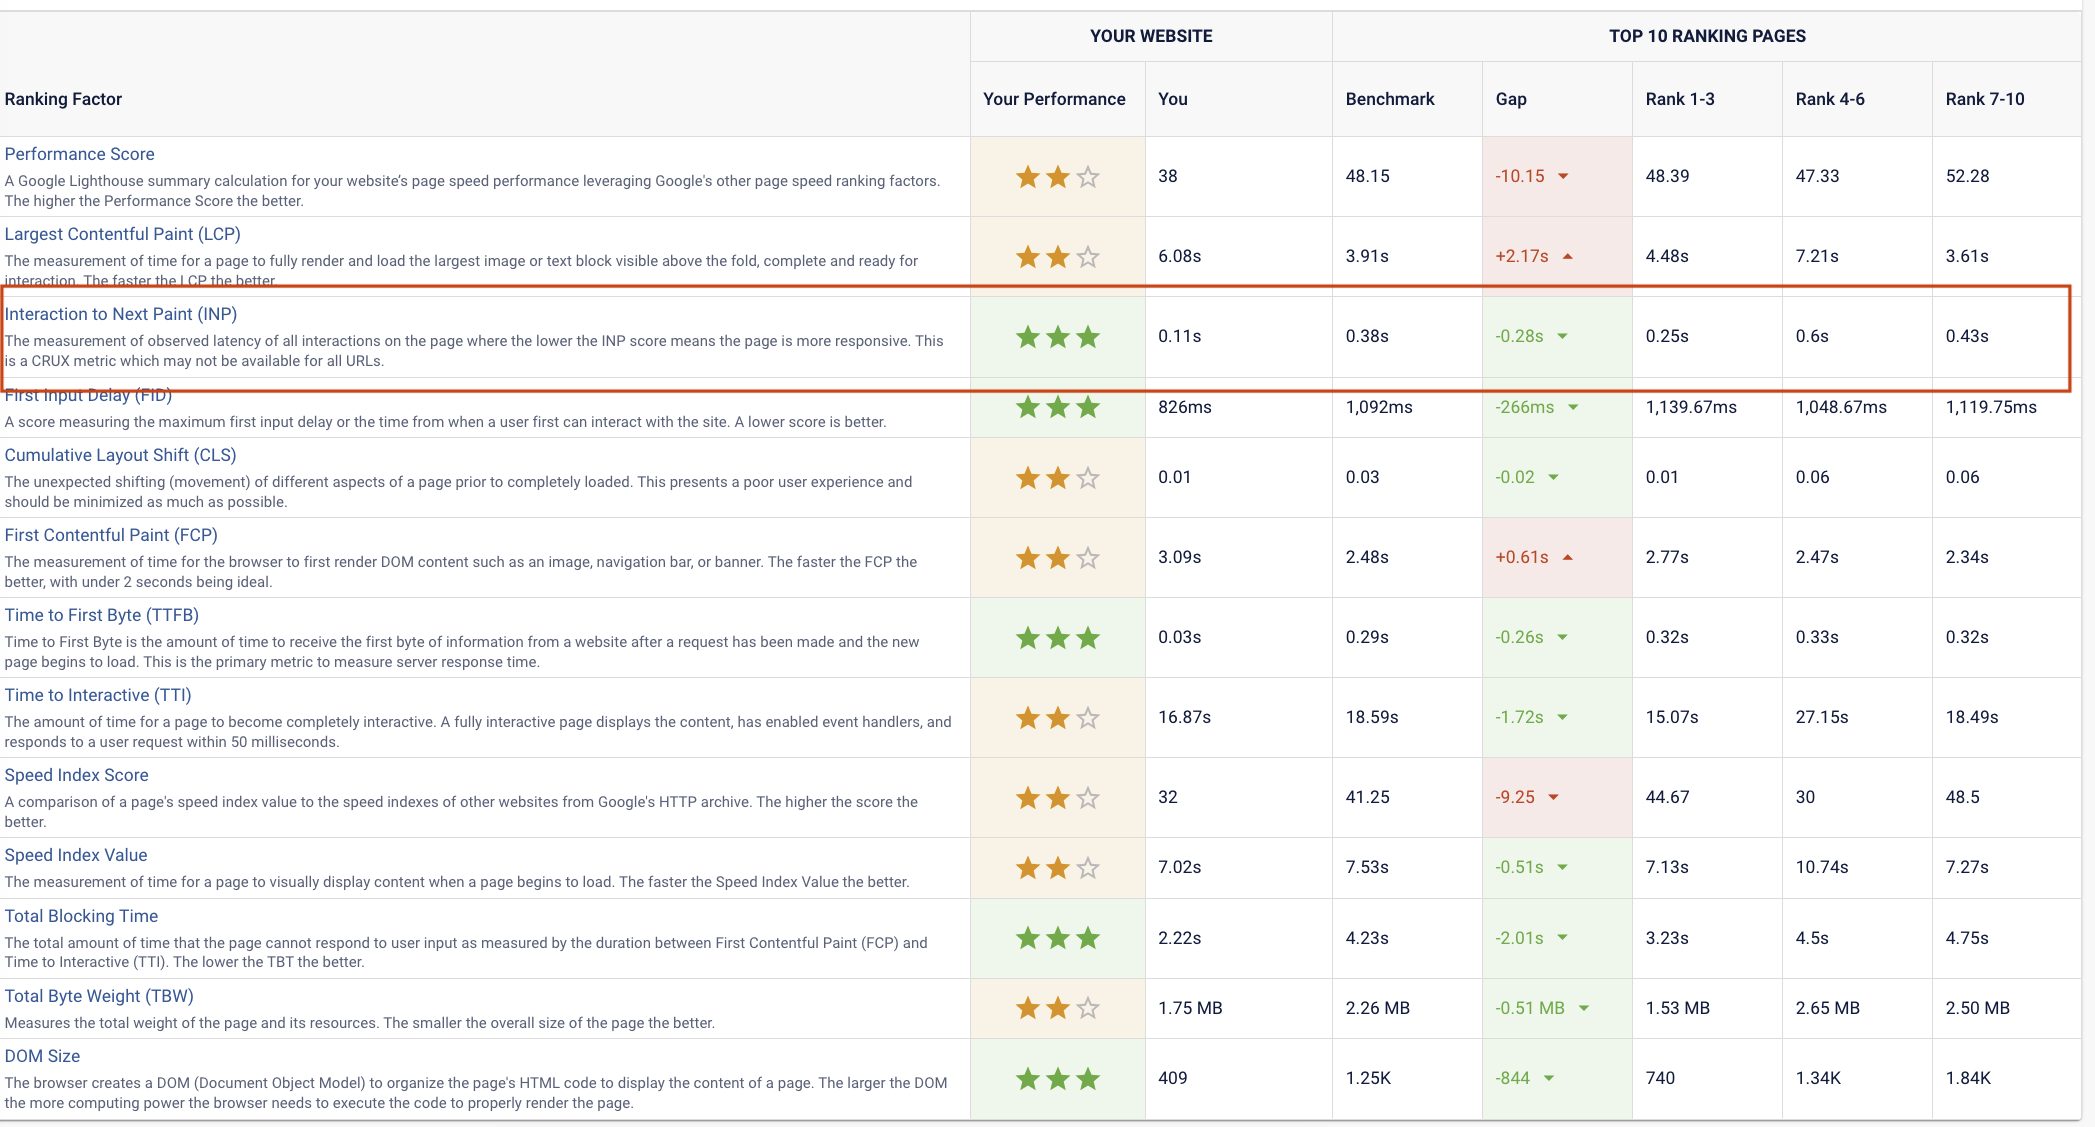 Ranking Factors Shown in BrightEdge SearchIQ